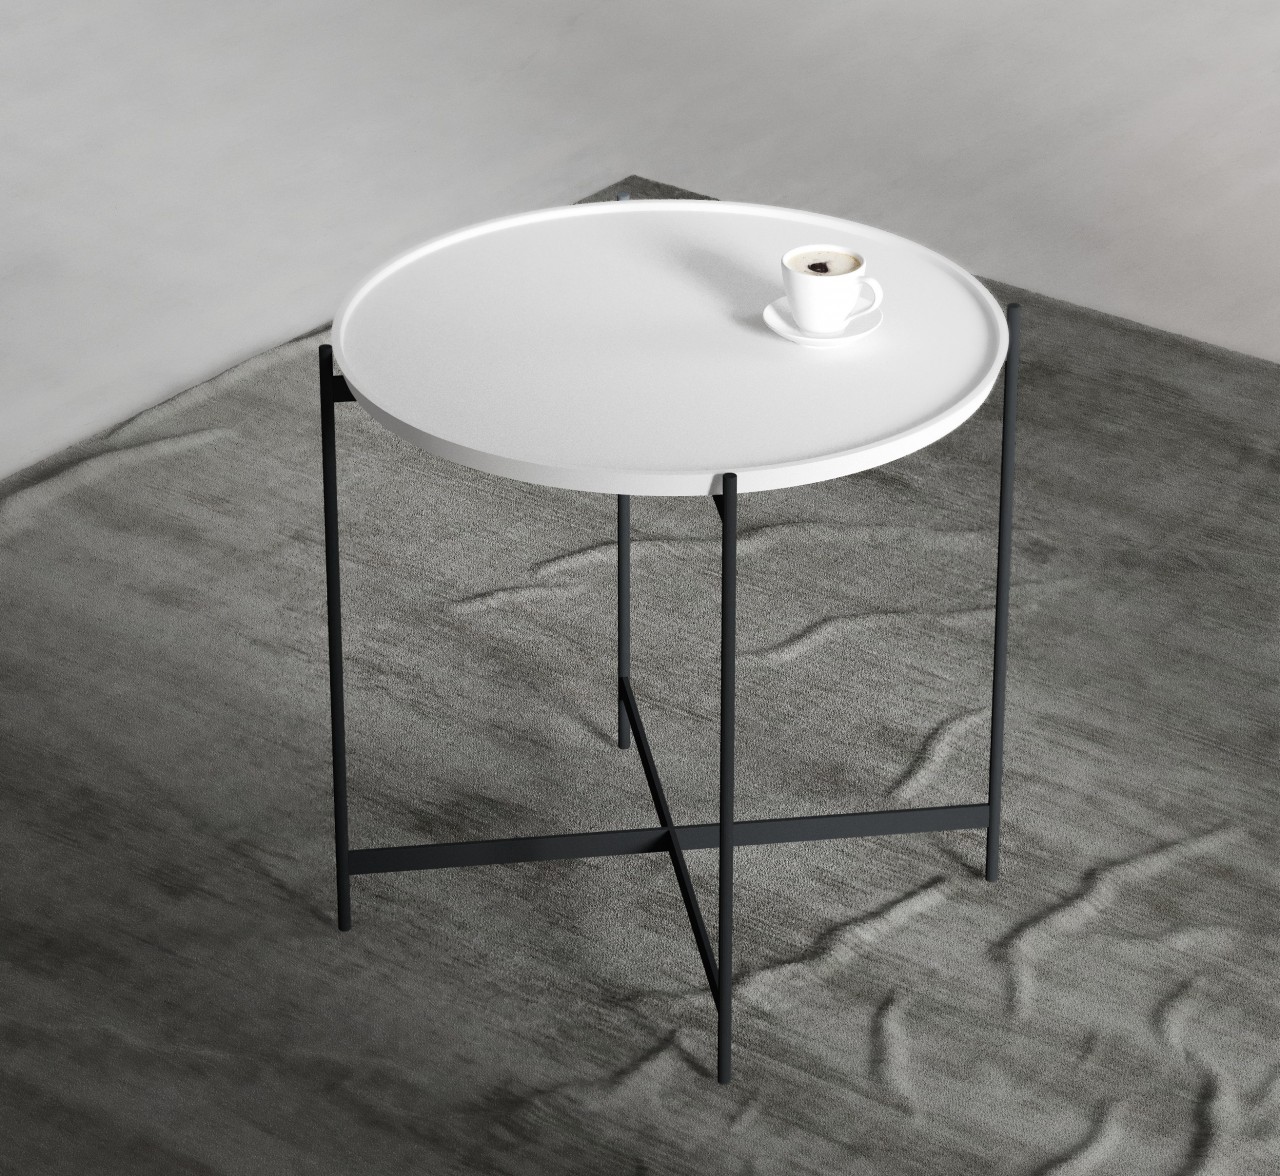 Uma mesa de apoio que lhe dará ainda mais praticidade, é a Tray 01 de MoveisOnline. Esta mesa possui design moderno e é perfeita para ter sempre à mão aquilo que precisa.